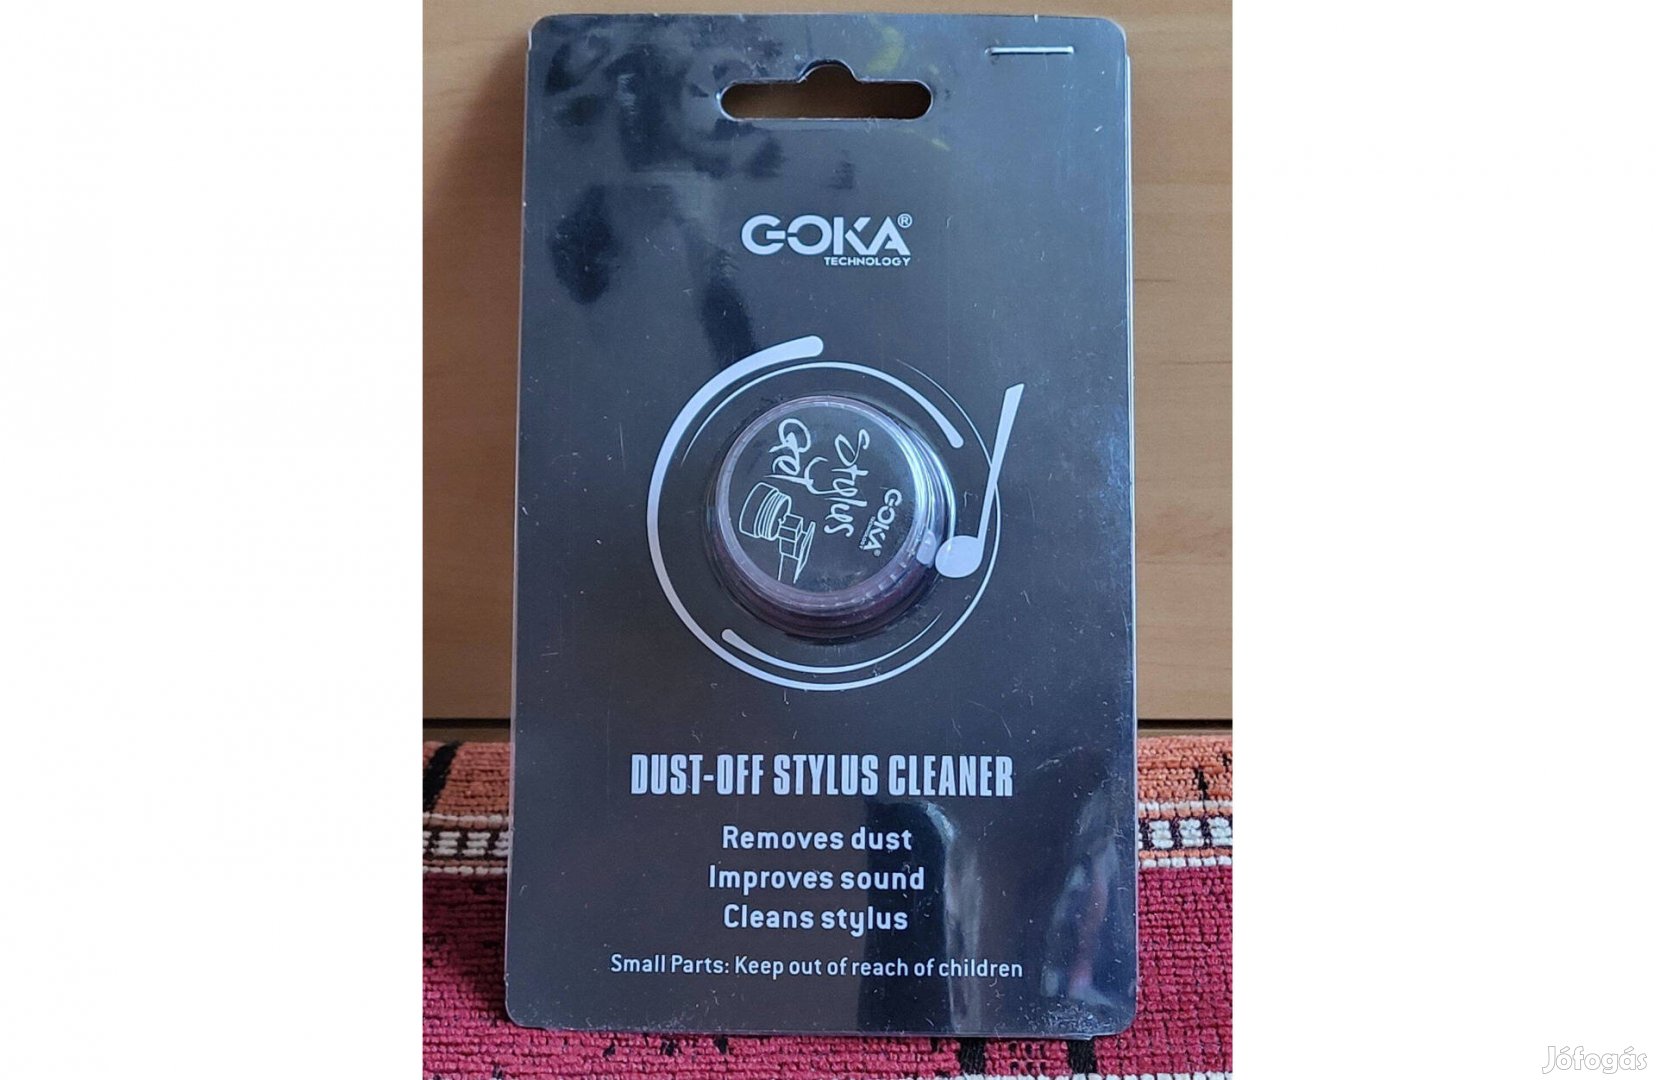 Goka tűtisztító gél párna lemezjátszó bakelit hanglemez vinyl Új